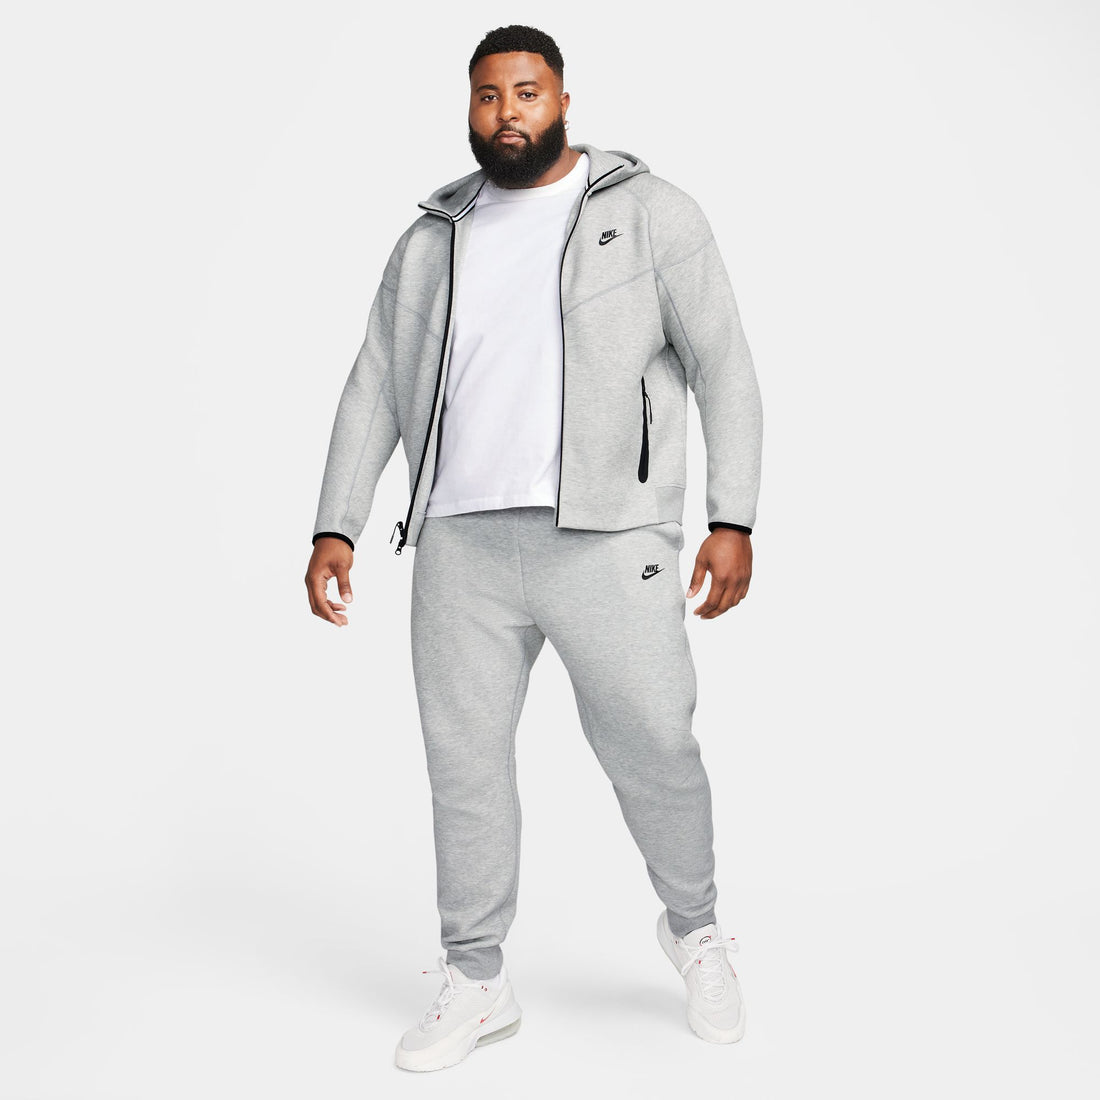 Nike Sportswear Tech Fleece Windrunner (Grey)